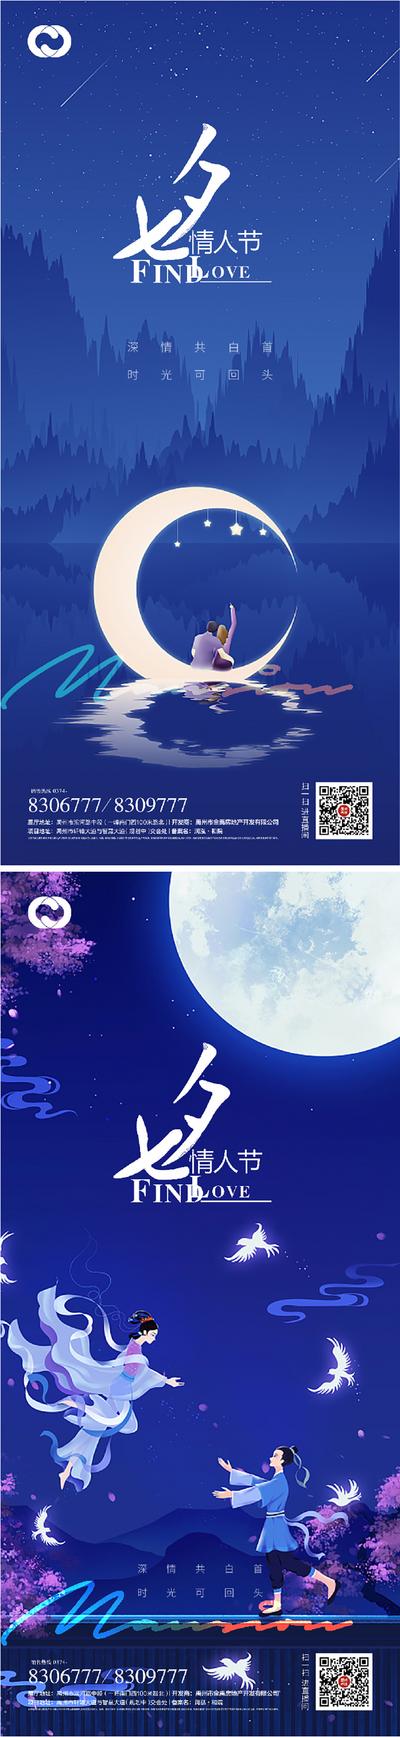 南门网 海报 七夕 情人节 中国传统节日 插画 月亮 牛郎织女